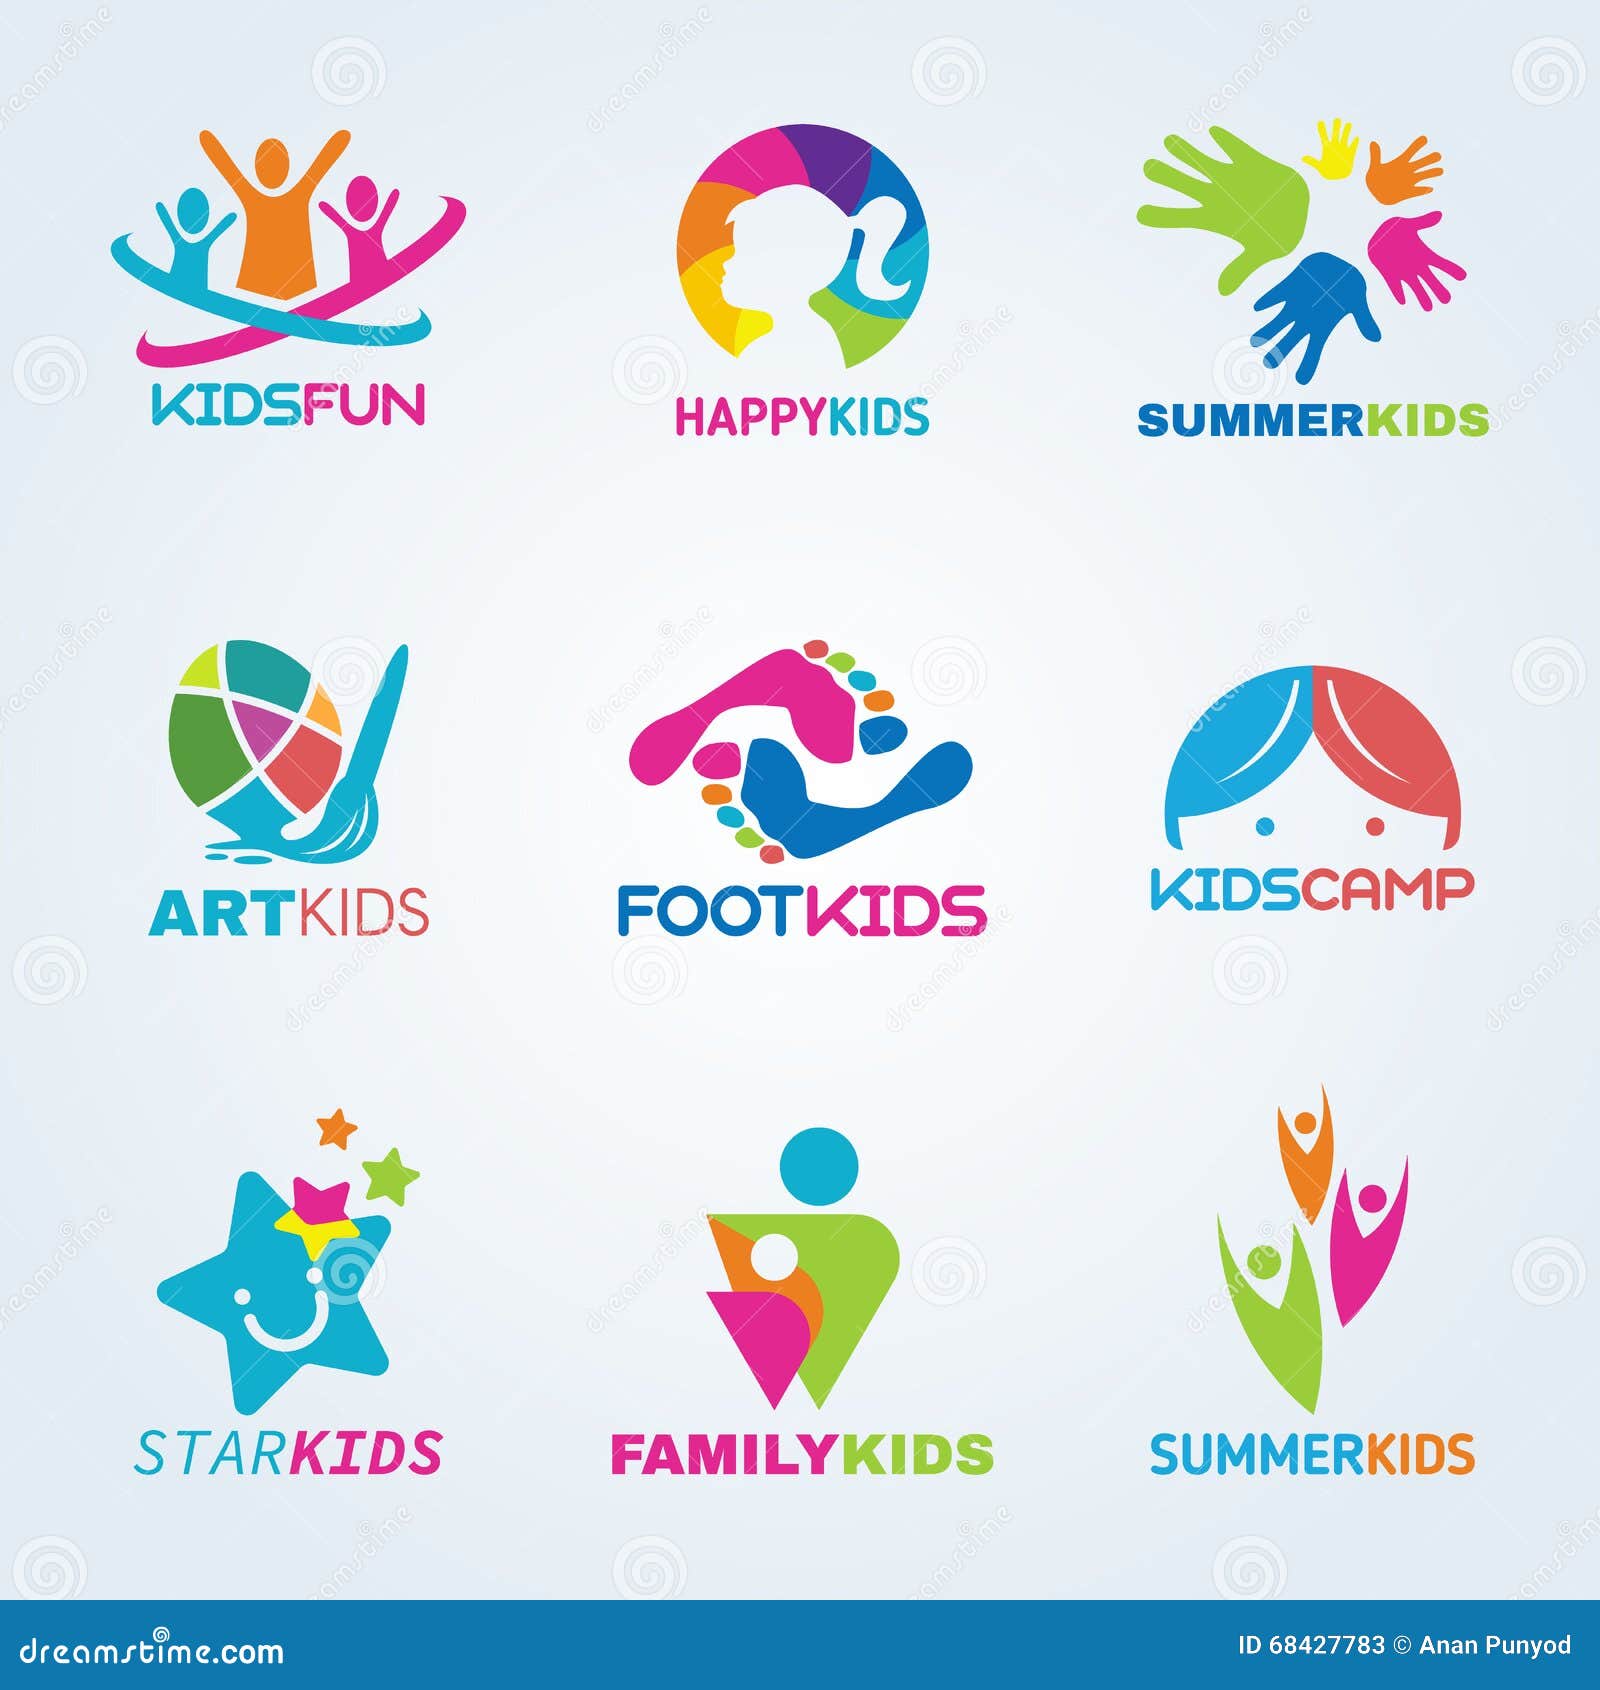 Kids App Logos